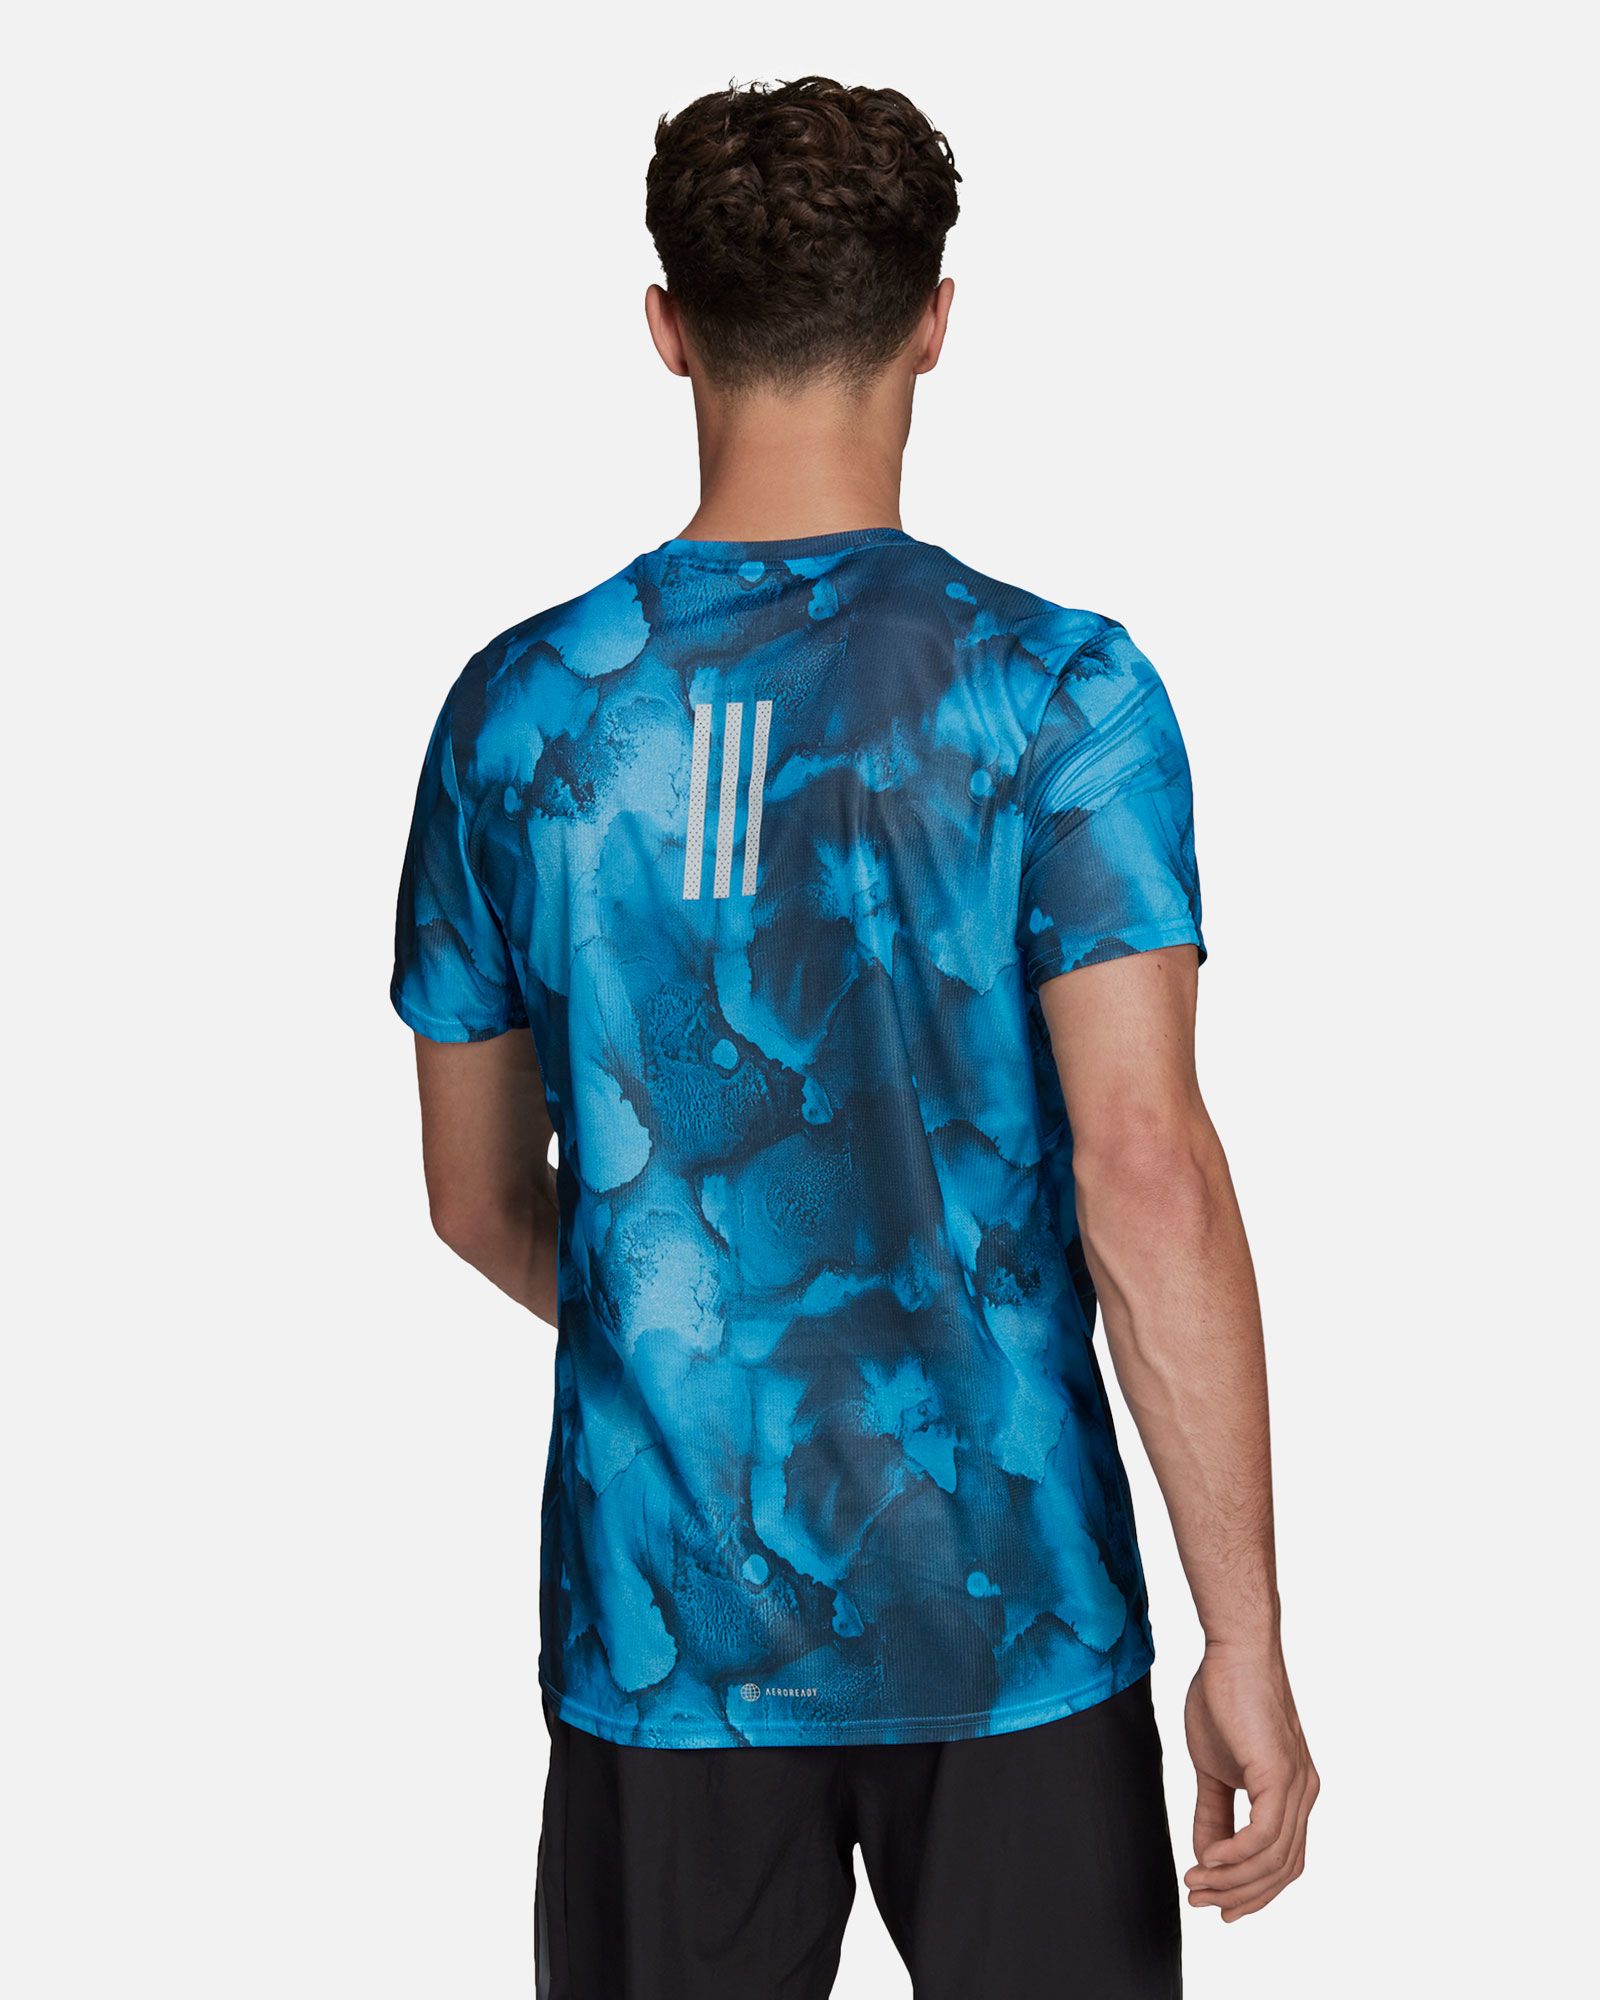 Camiseta adidas Fast Graphic Primeblue - Fútbol Factory